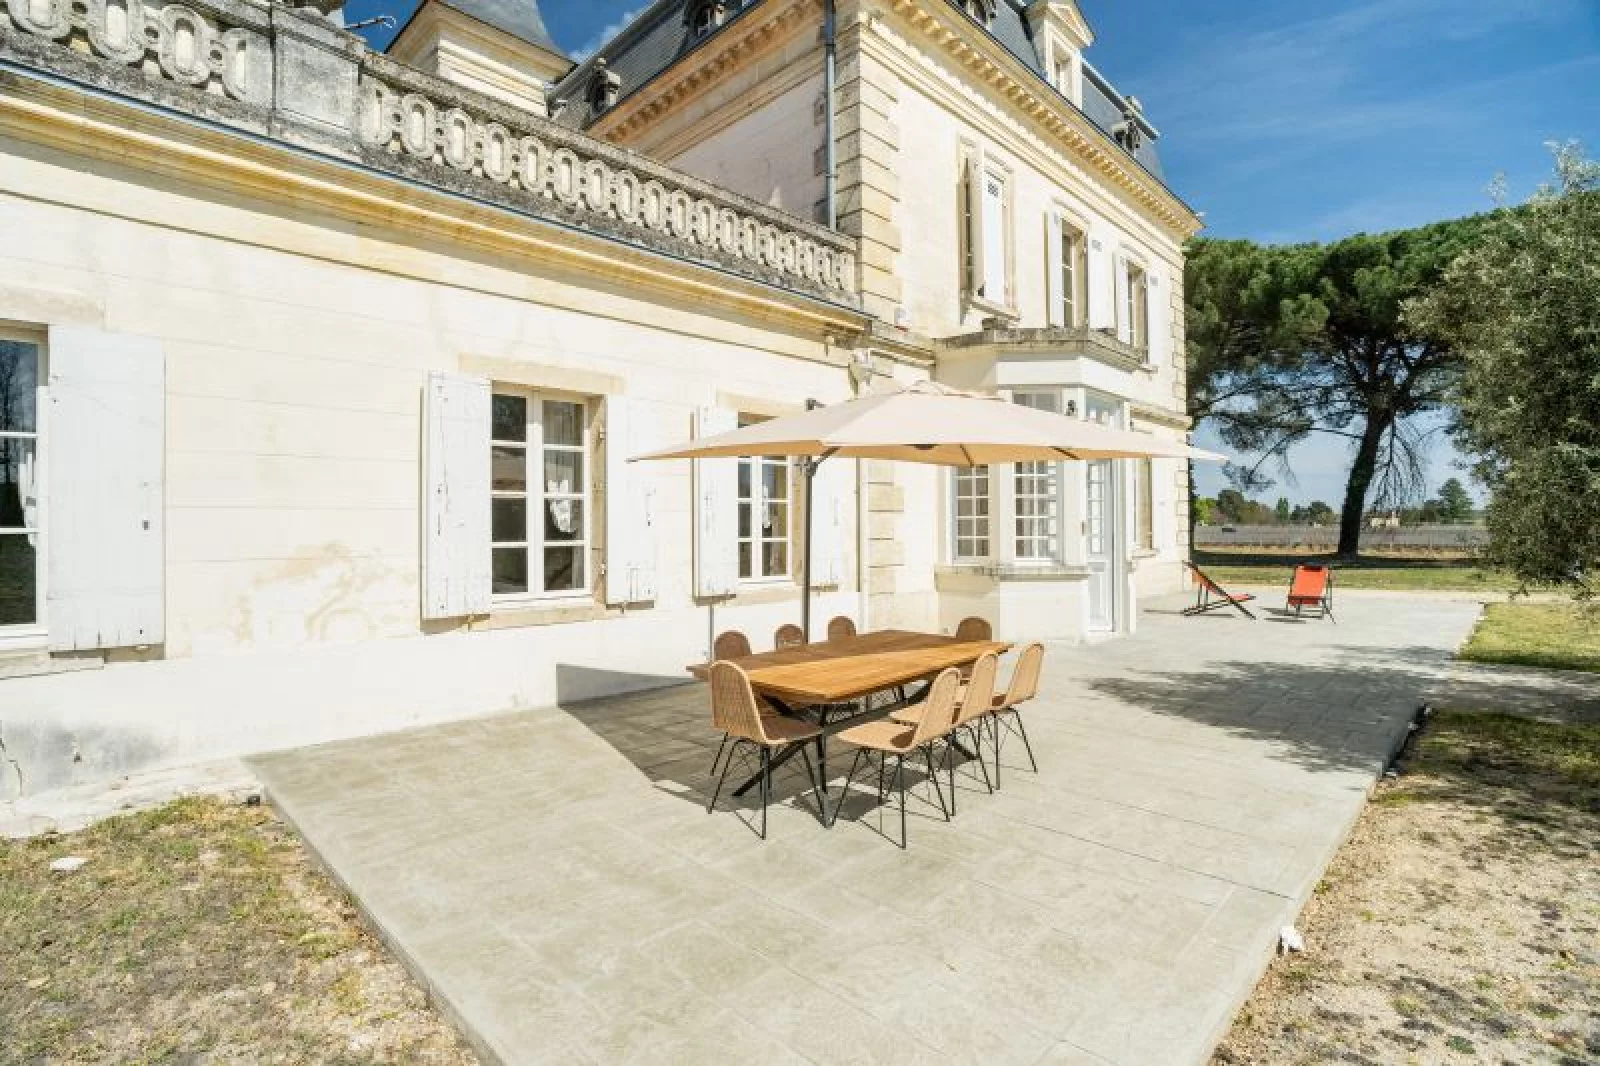 Location château meublé 15 pièces 460m² (Bordeaux sud / la Brède)